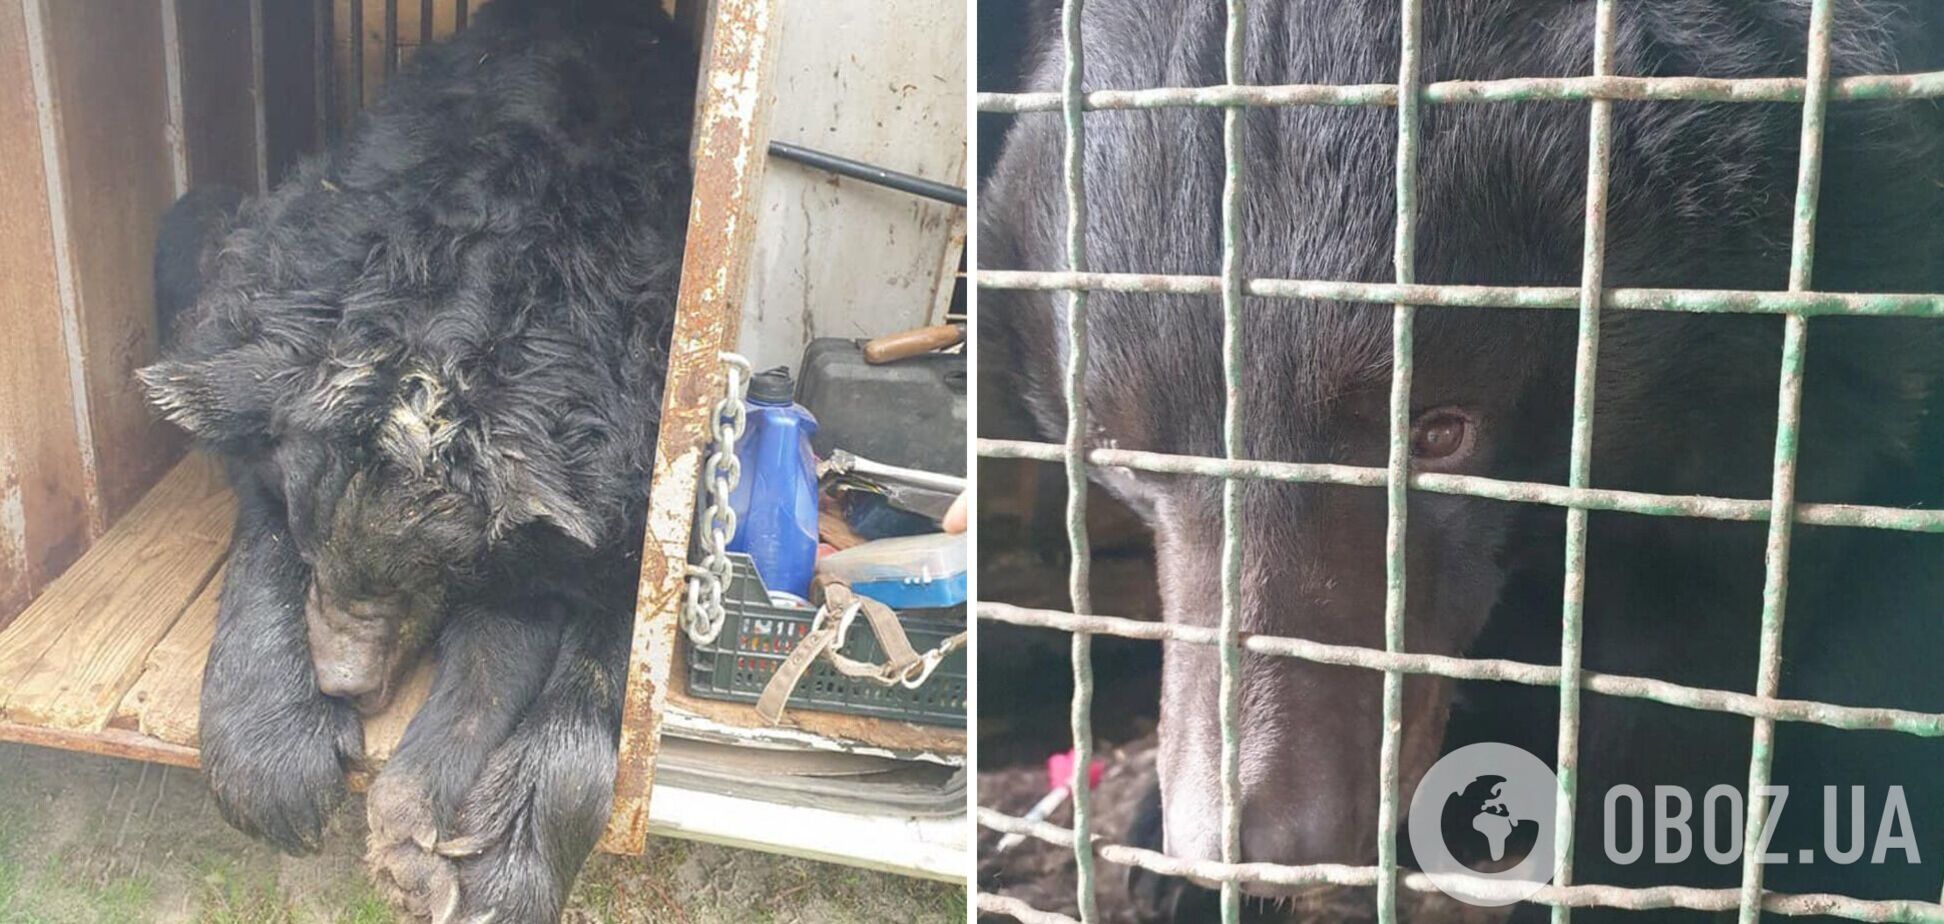 Зоозащитники спасли контуженного медведя, которого нашли в частном зоопарке под Лиманом. Фото